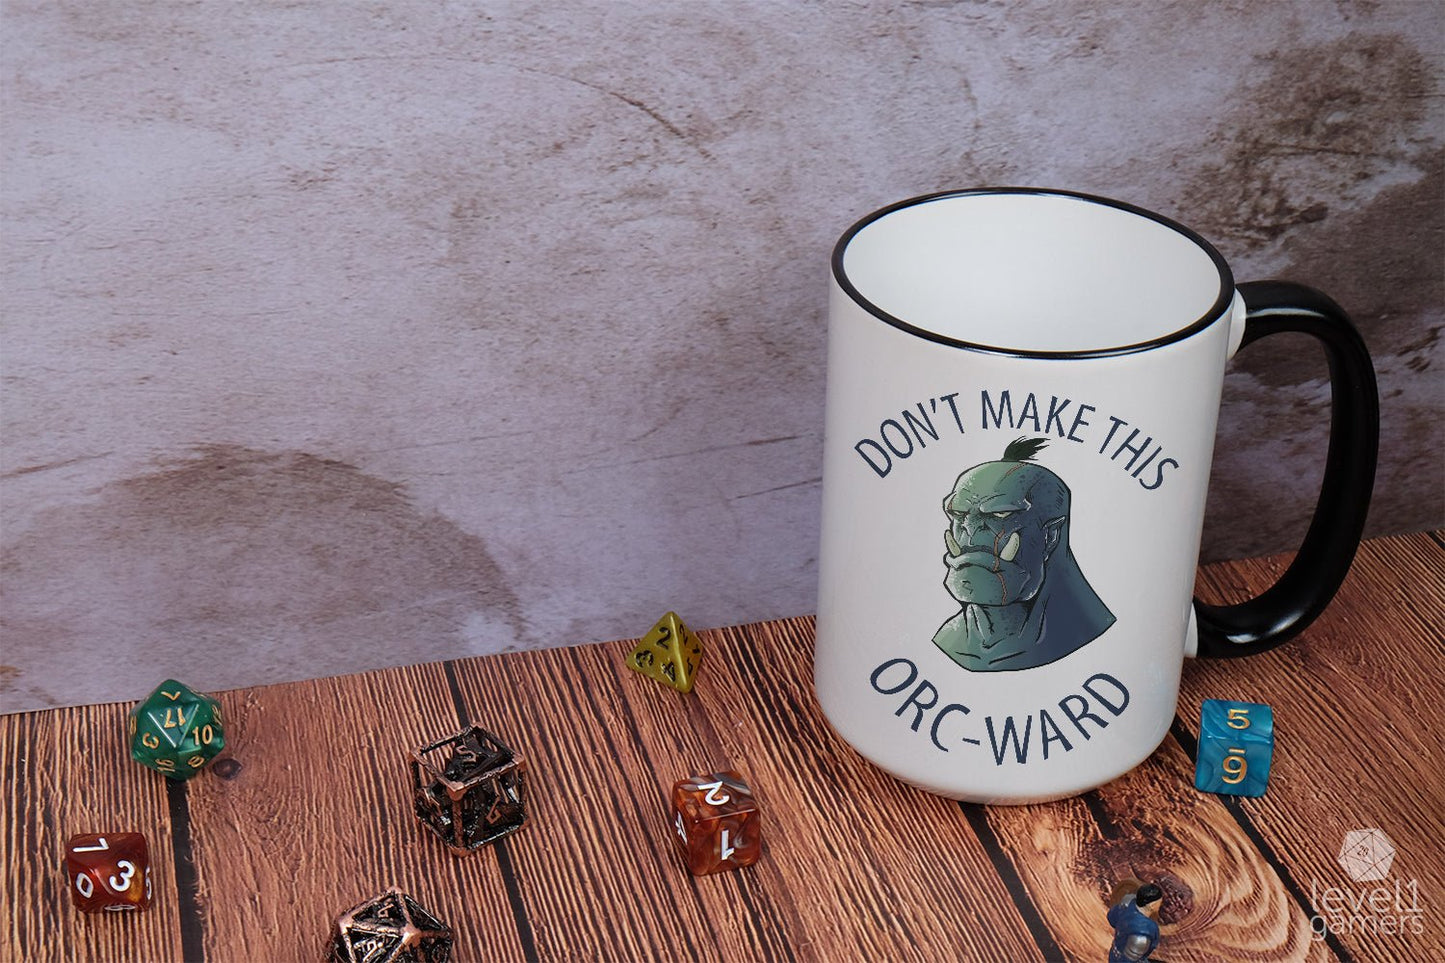 Don't Make This Orc-Ward Mug  Level 1 Gamers   